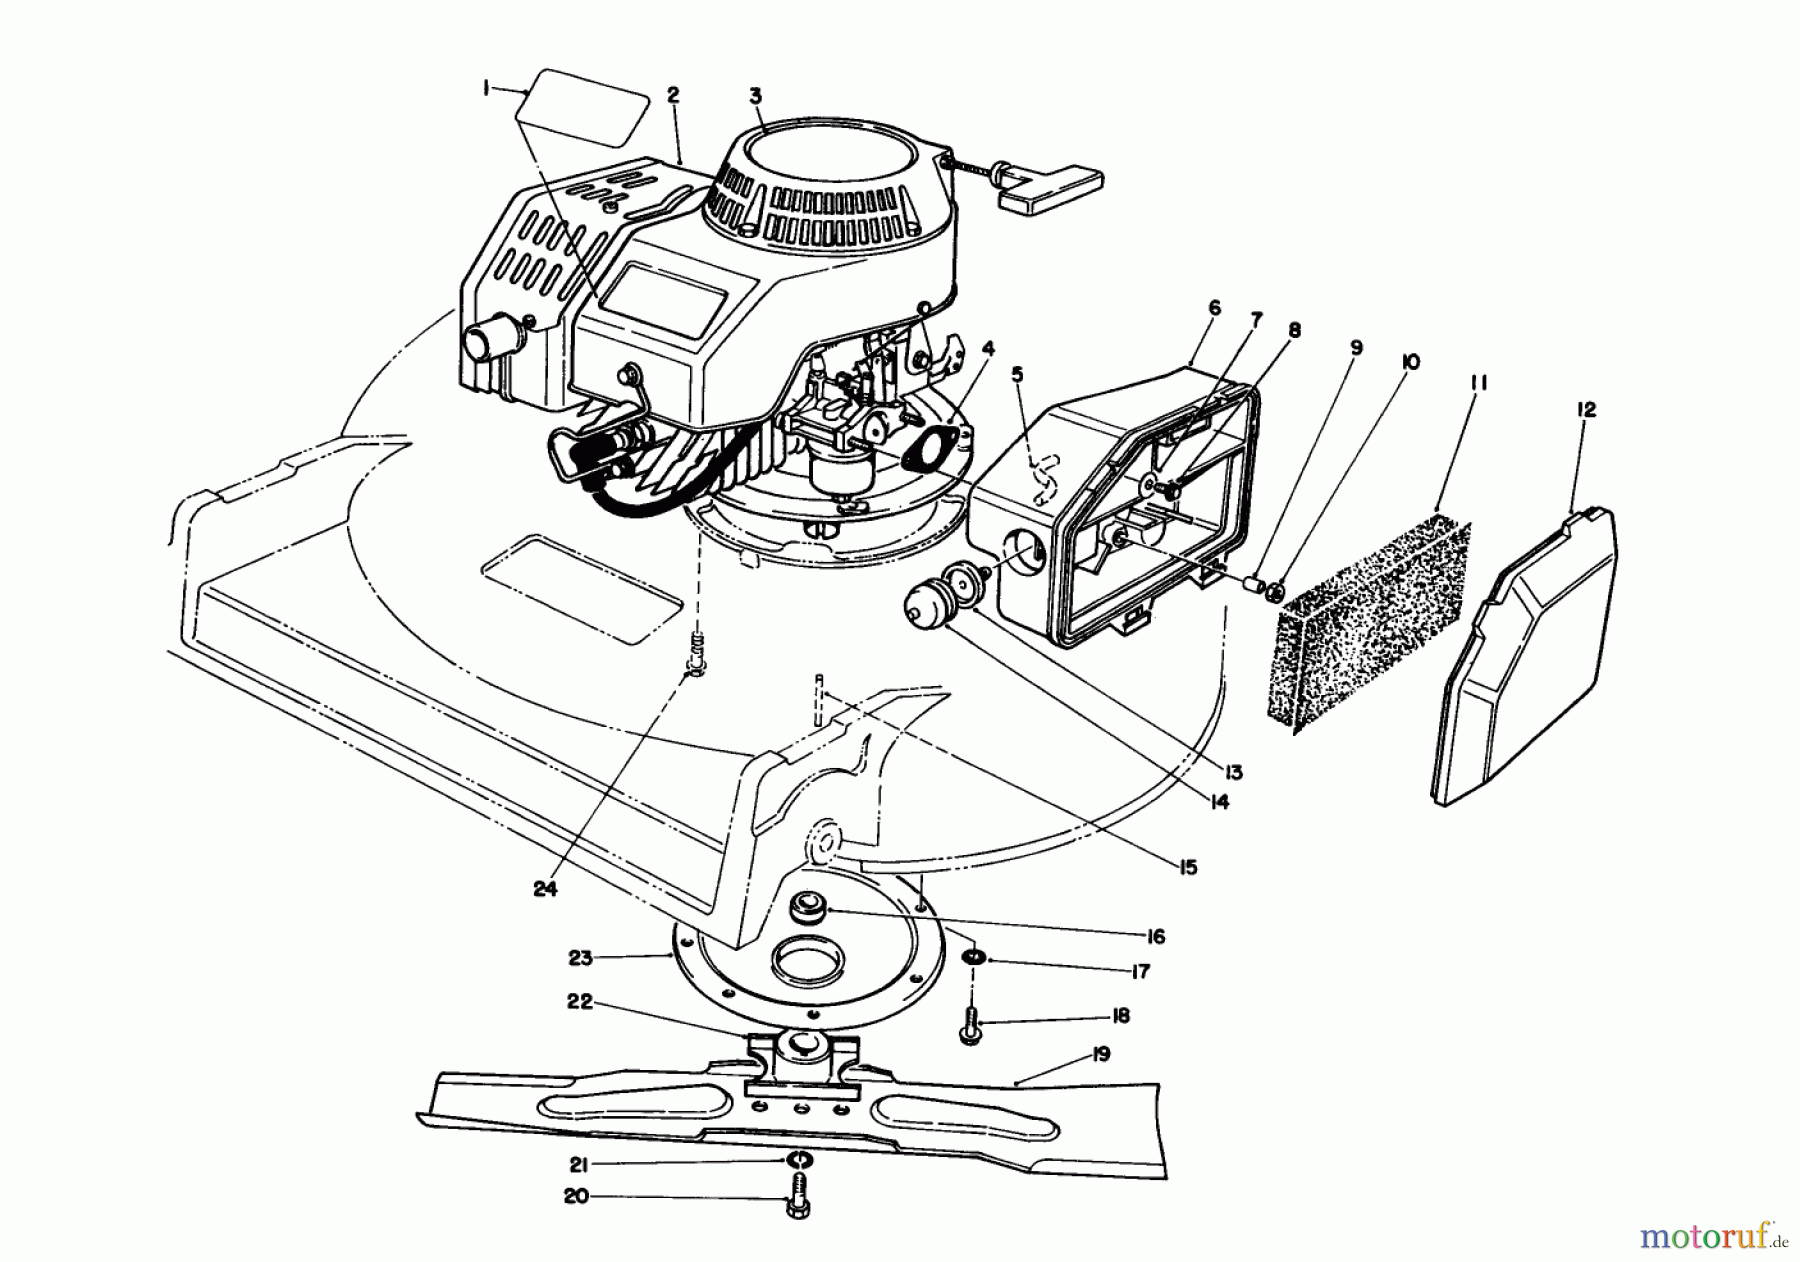  Toro Neu Mowers, Walk-Behind Seite 2 22030 - Toro Lawnmower, 1990 (0000001-0999999) ENGINE ASSEMBLY (MODEL 22030)